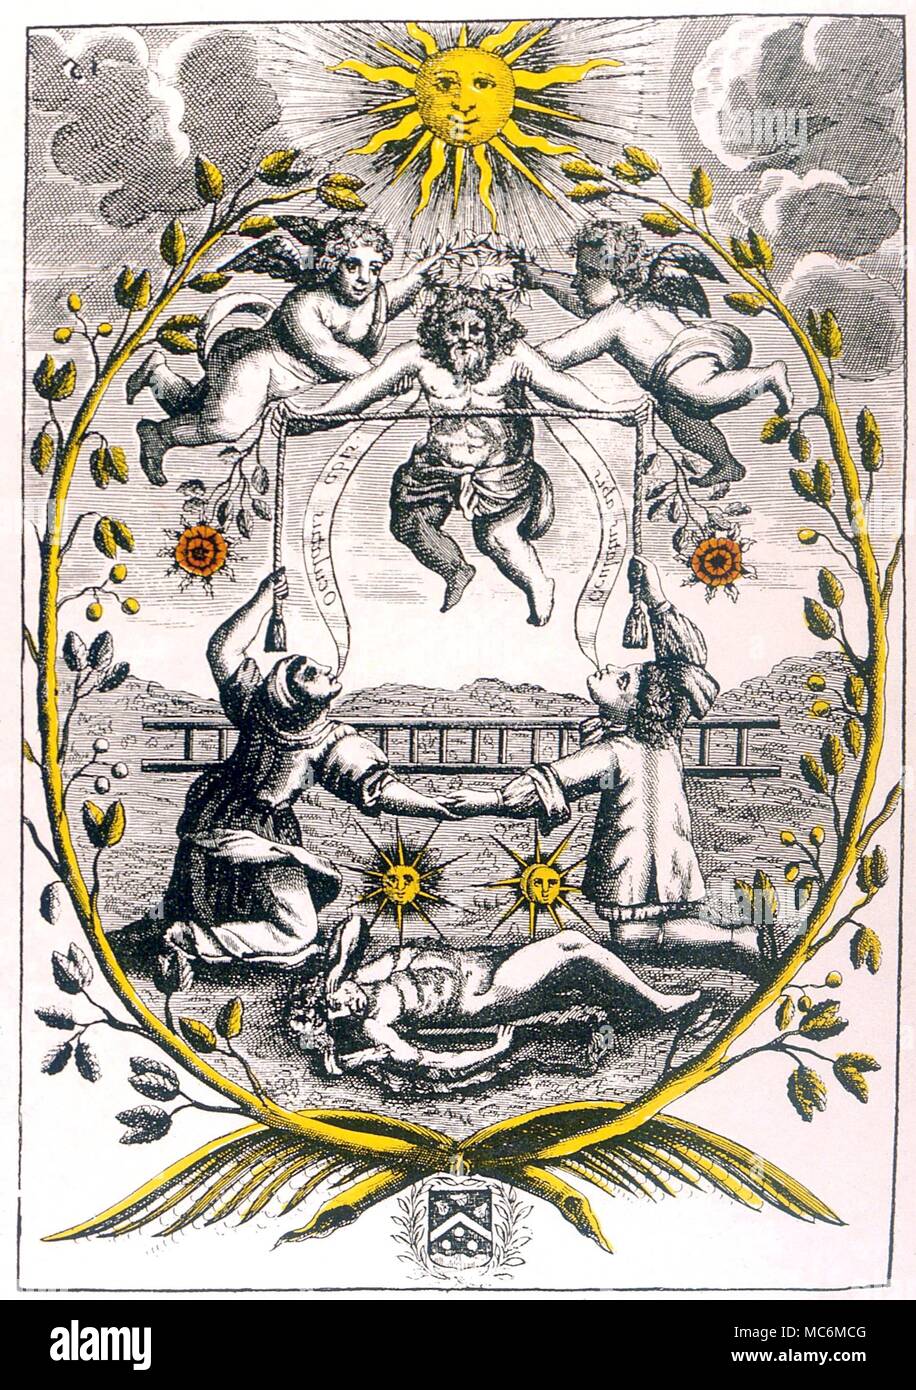 Alchimia - MUTUS LIBER. Piastra 15 da Mutus Liber, il libro privi di parole, 1677 (La Rochelle), probabilmente progettato da Jacob Saulat. Piastra 15 - la trasfigurazione della quintessenza (Ercole) Foto Stock